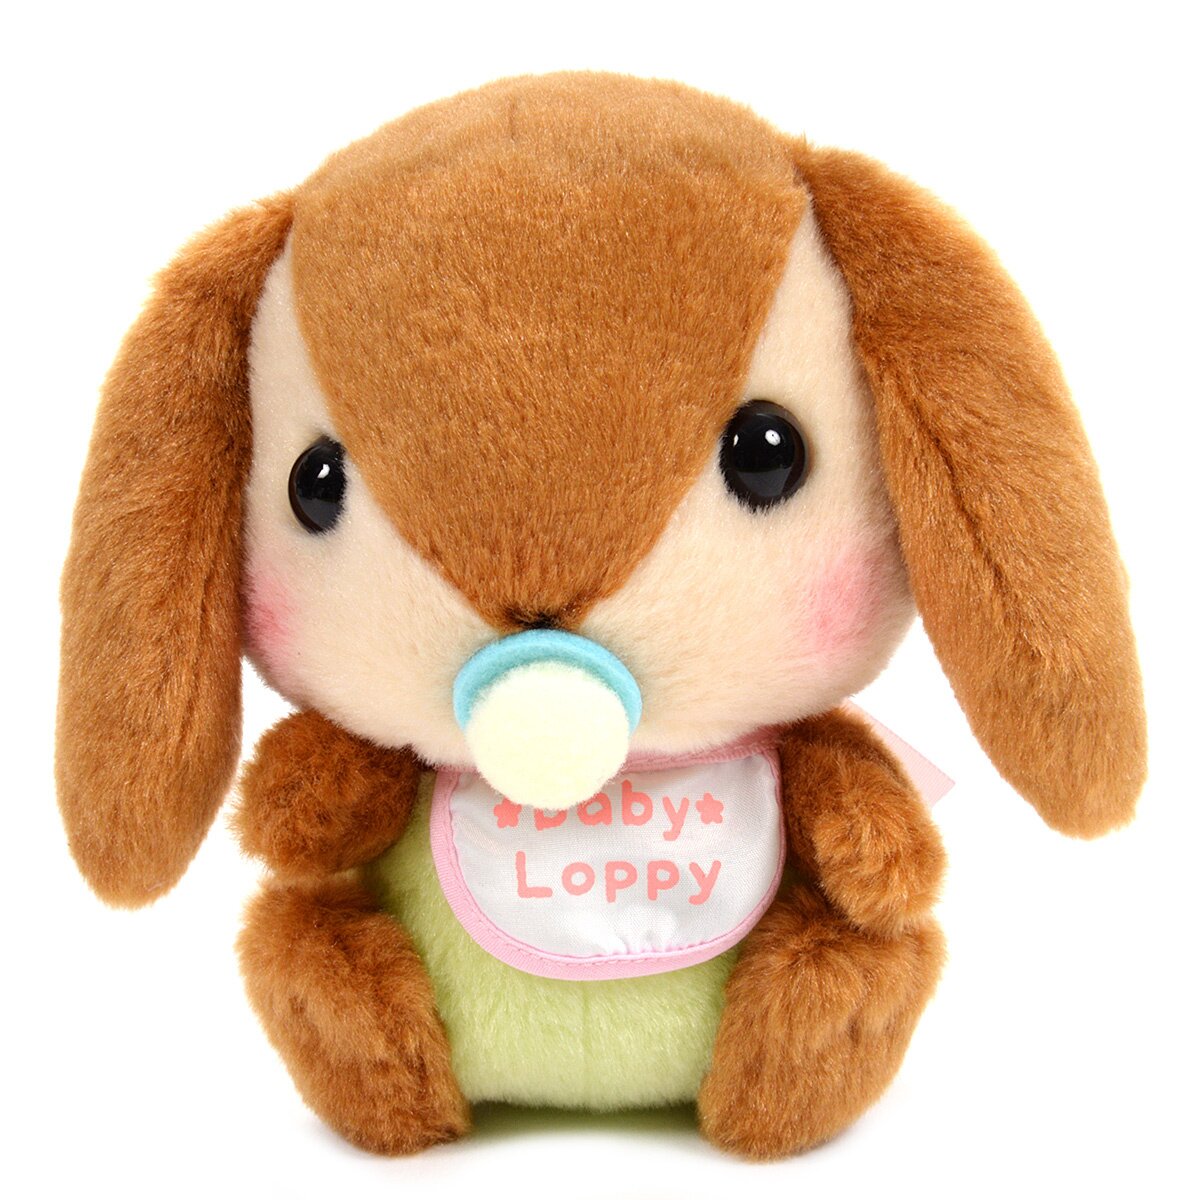 Premium Plush Small Rabbit Dog Toy